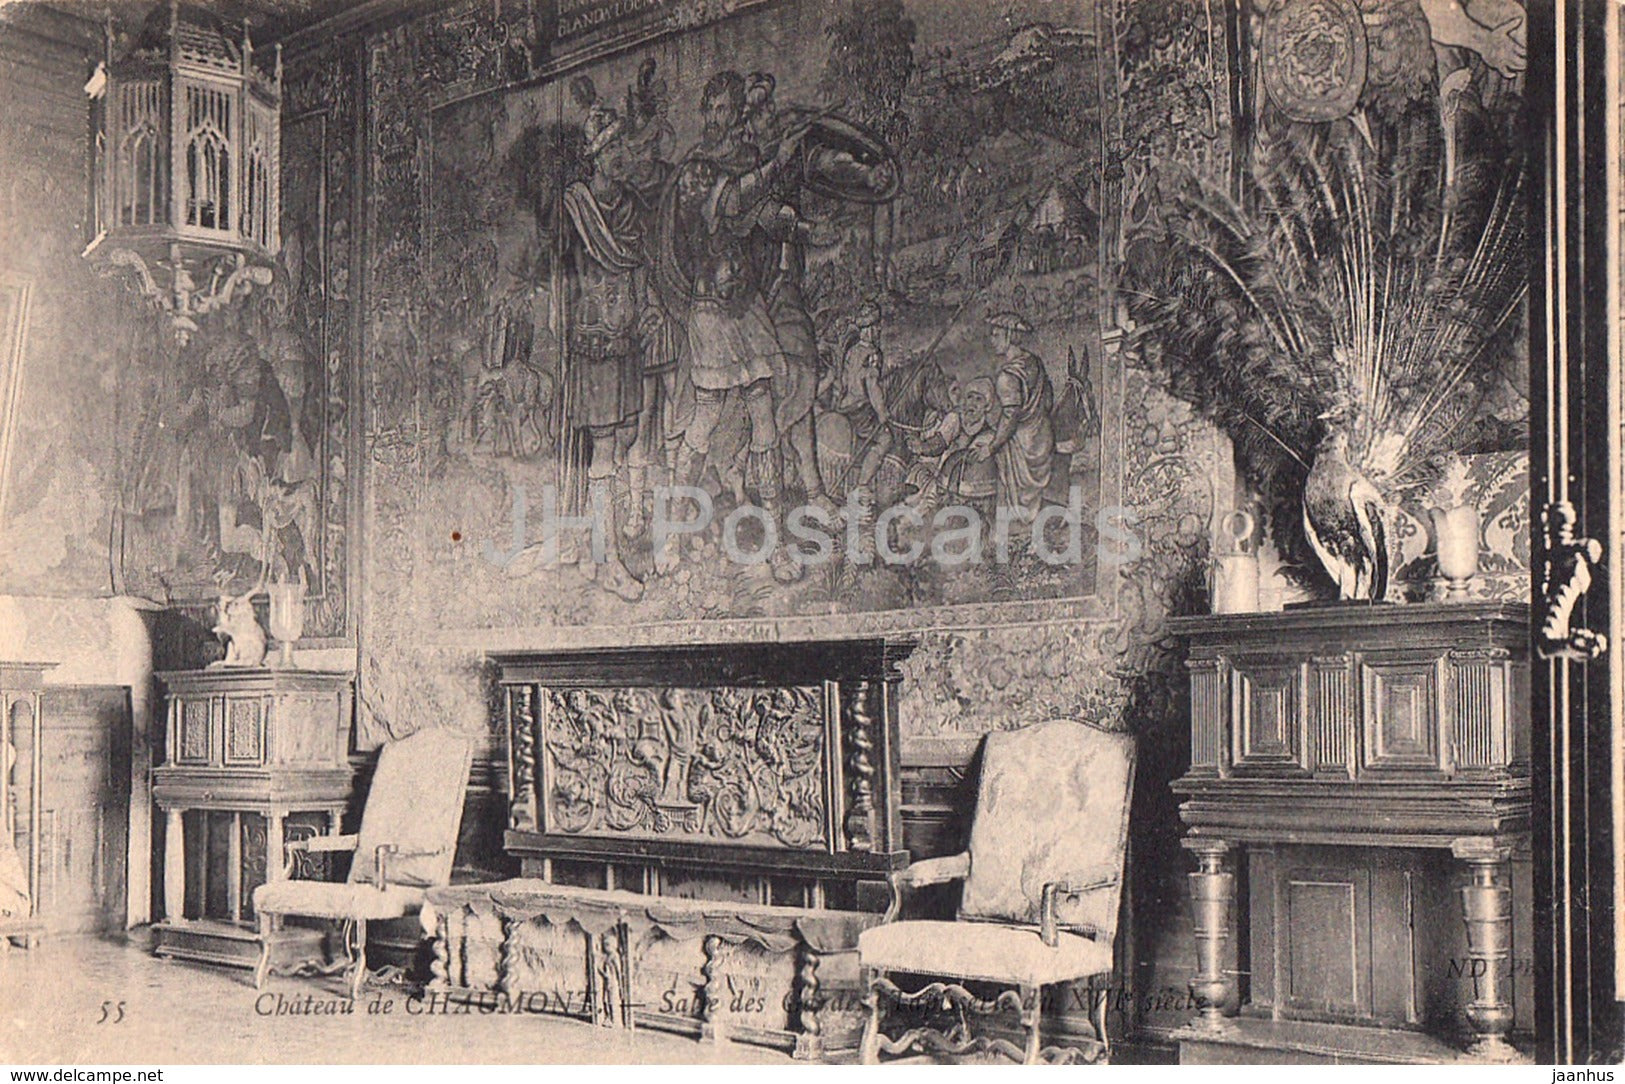 Chateau de Chaumont - Salle des Gardes - 55 - castle - old postcard - 1907 - France - used